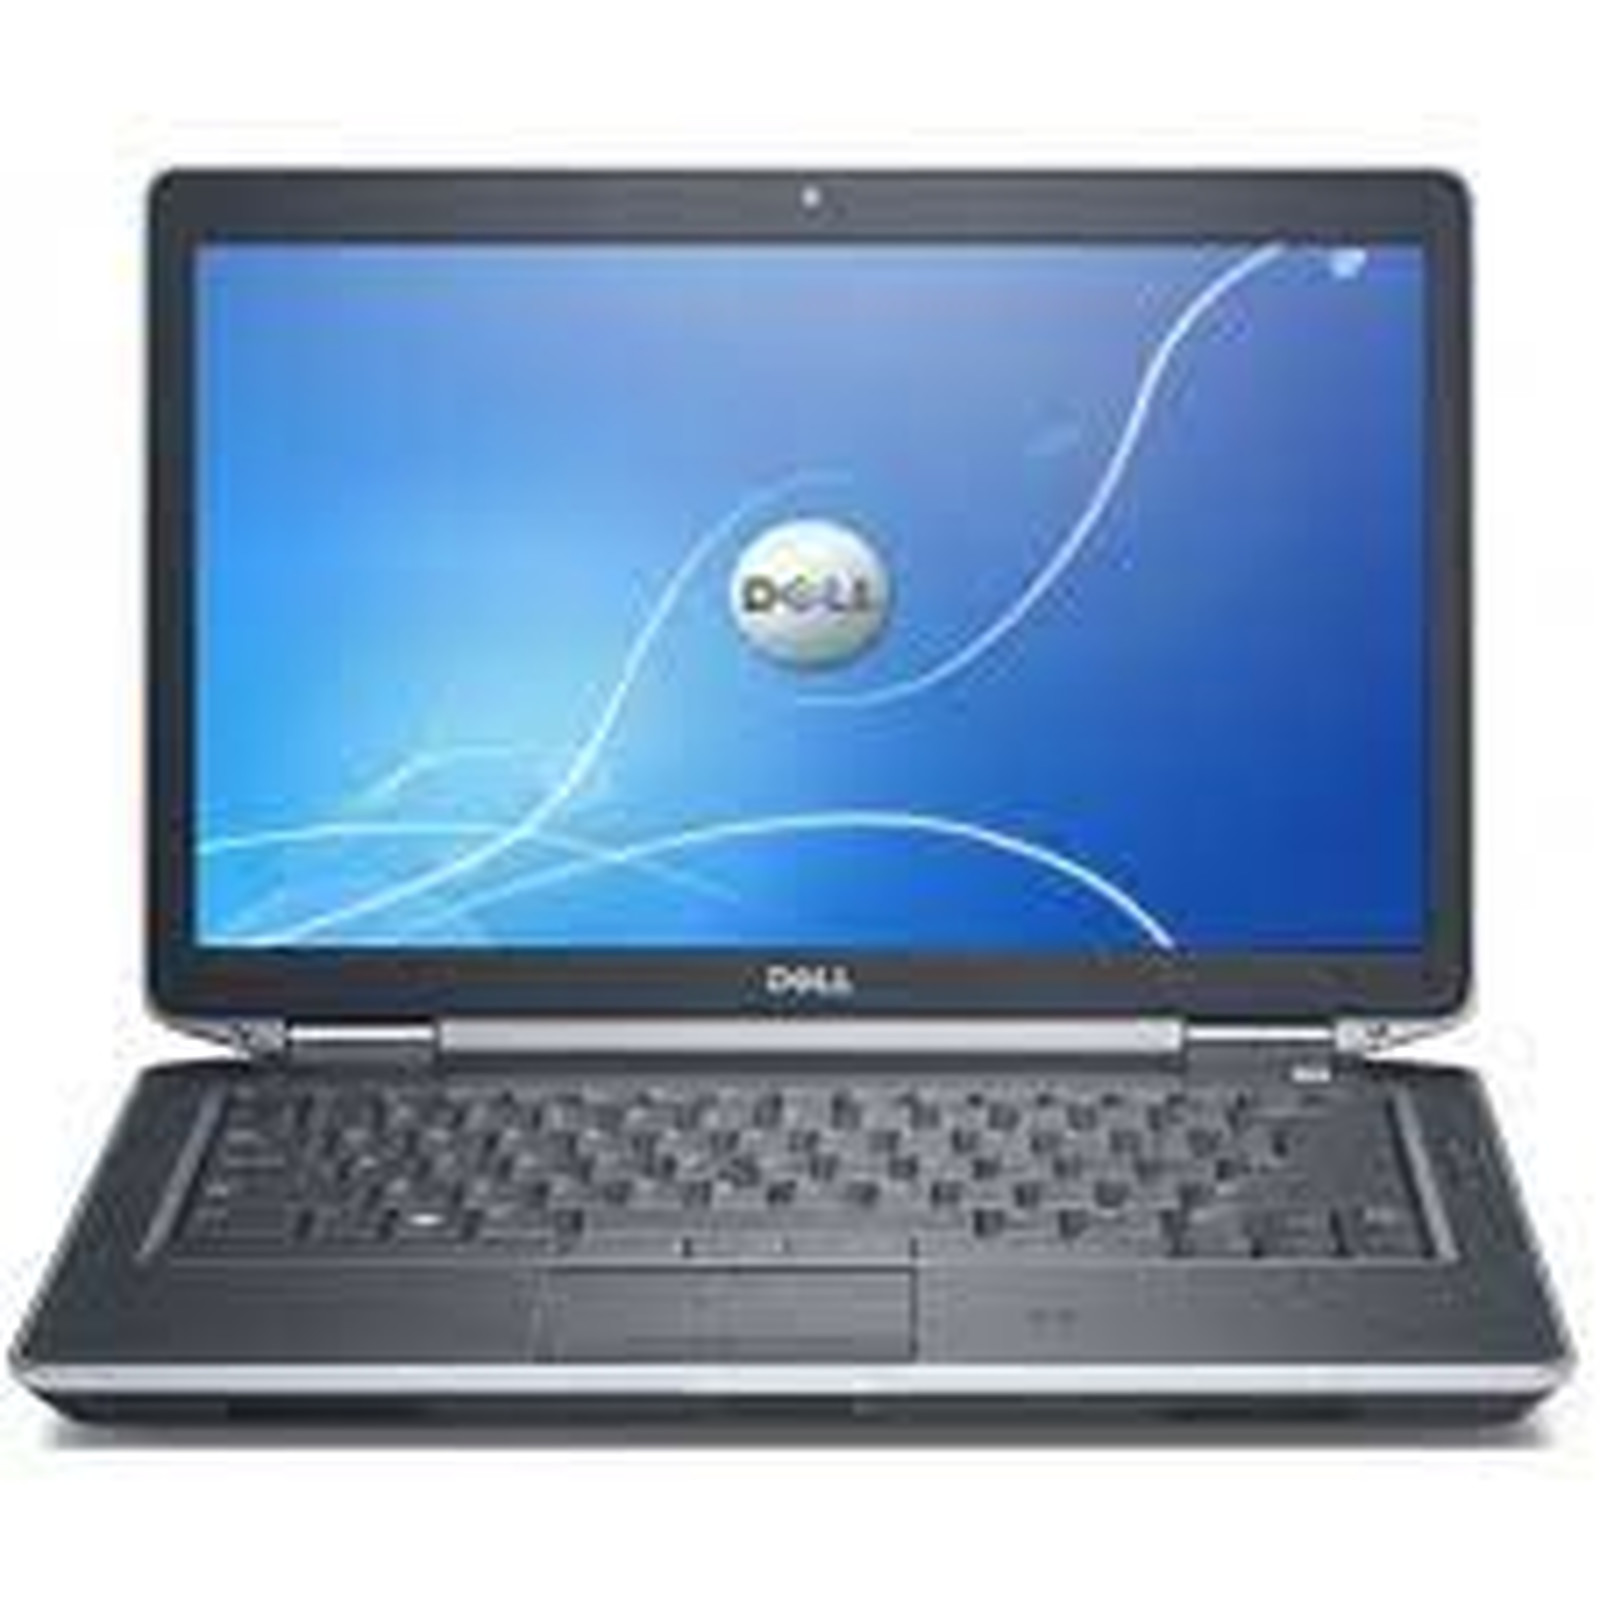 Dell Latitude E6430 · Reconditionne - PC portable reconditionne Dell